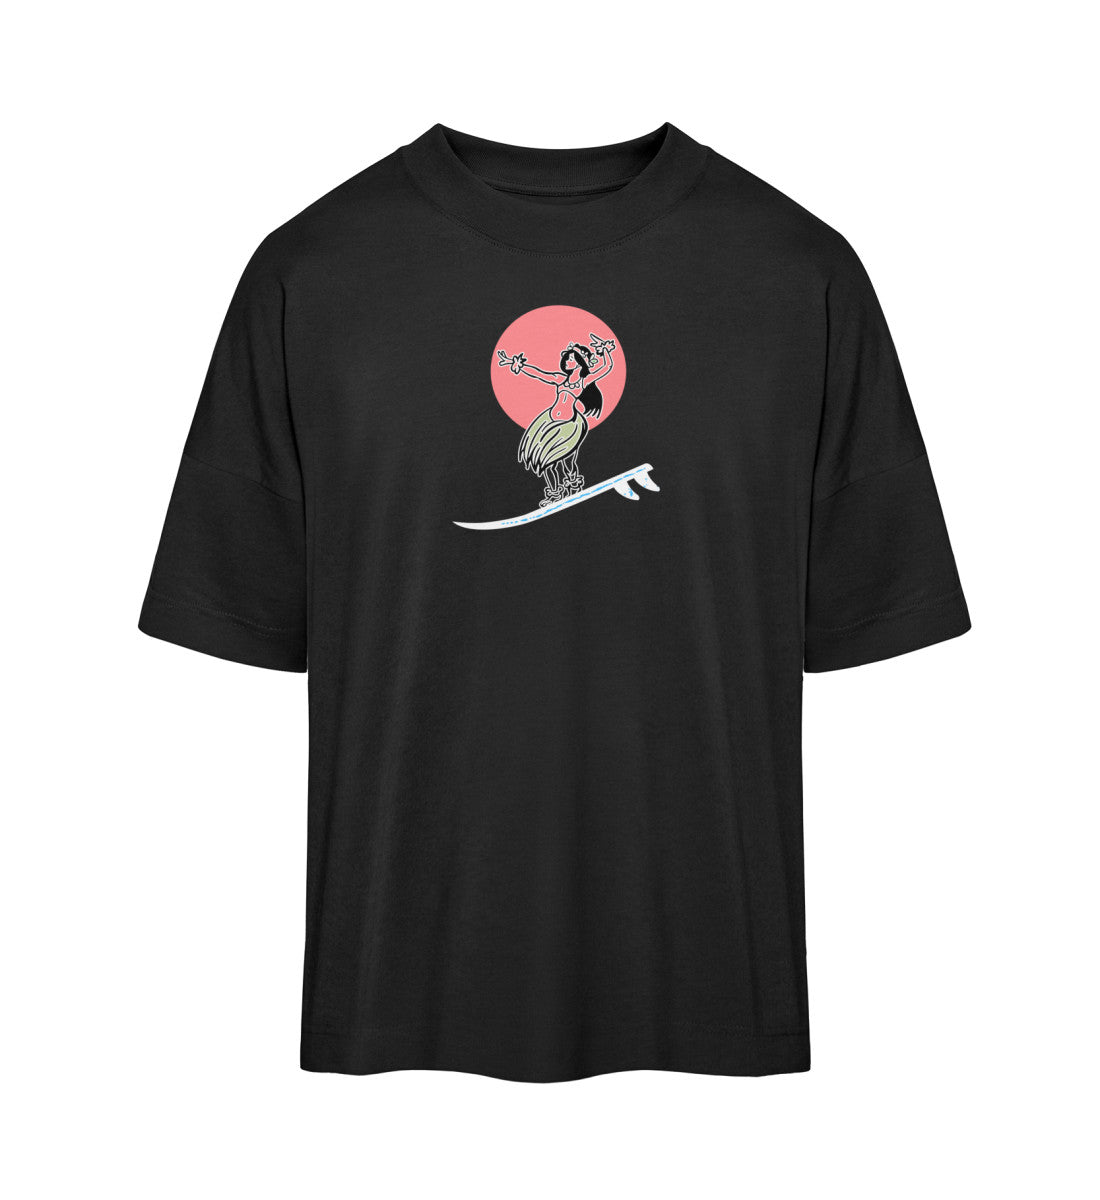 Schwarzes T-Shirt Unisex Oversize Fit für Frauen und Männer bedruckt mit dem Design der Roger Rockawoo Kollektion Surf where wet dreams become true